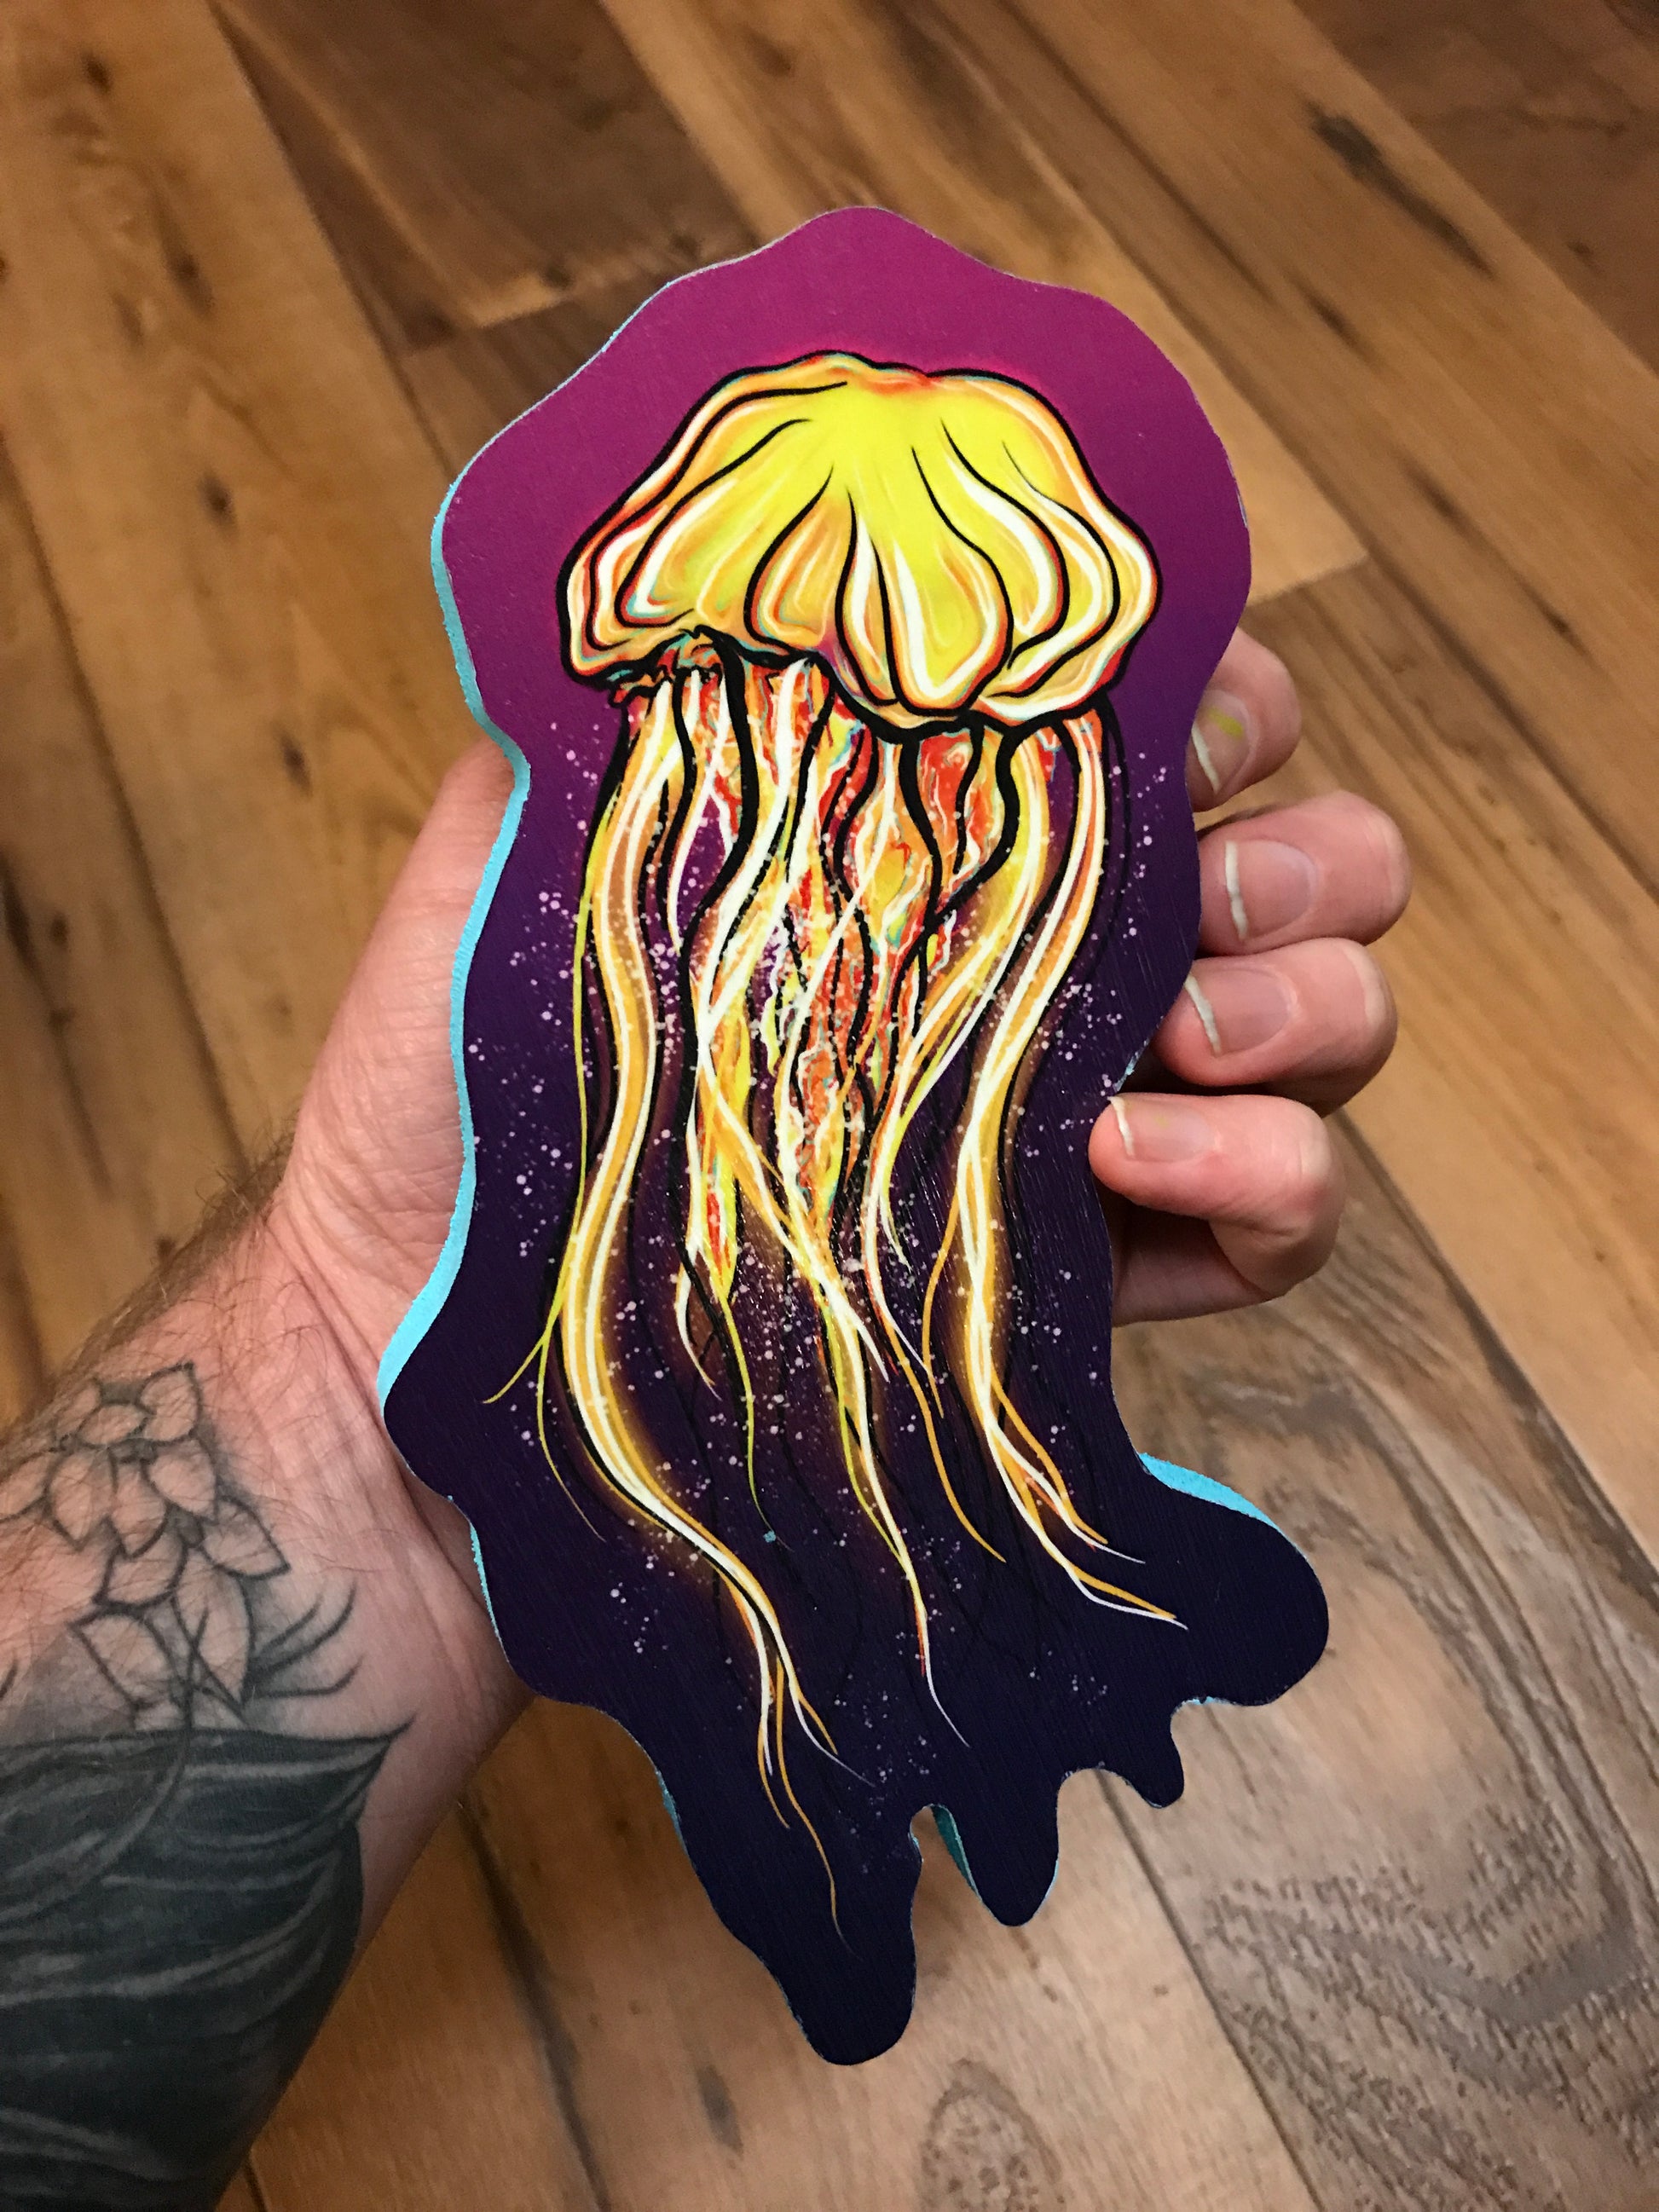 Jellyfish Print on wood - Daniel Curran Art